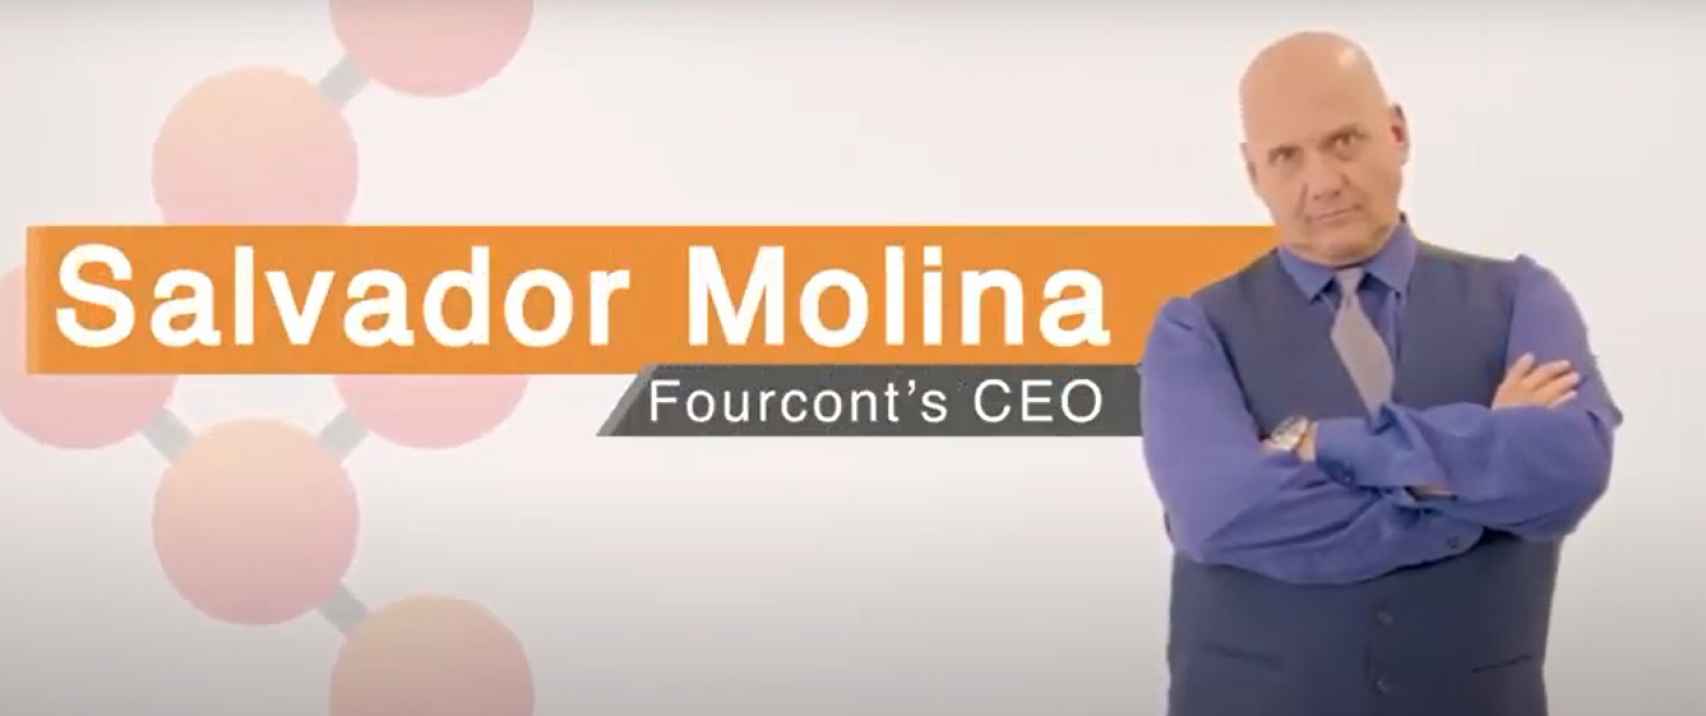 Salvador Molina, CEO de Forcount, reza un vídeo promocional de la compañía.